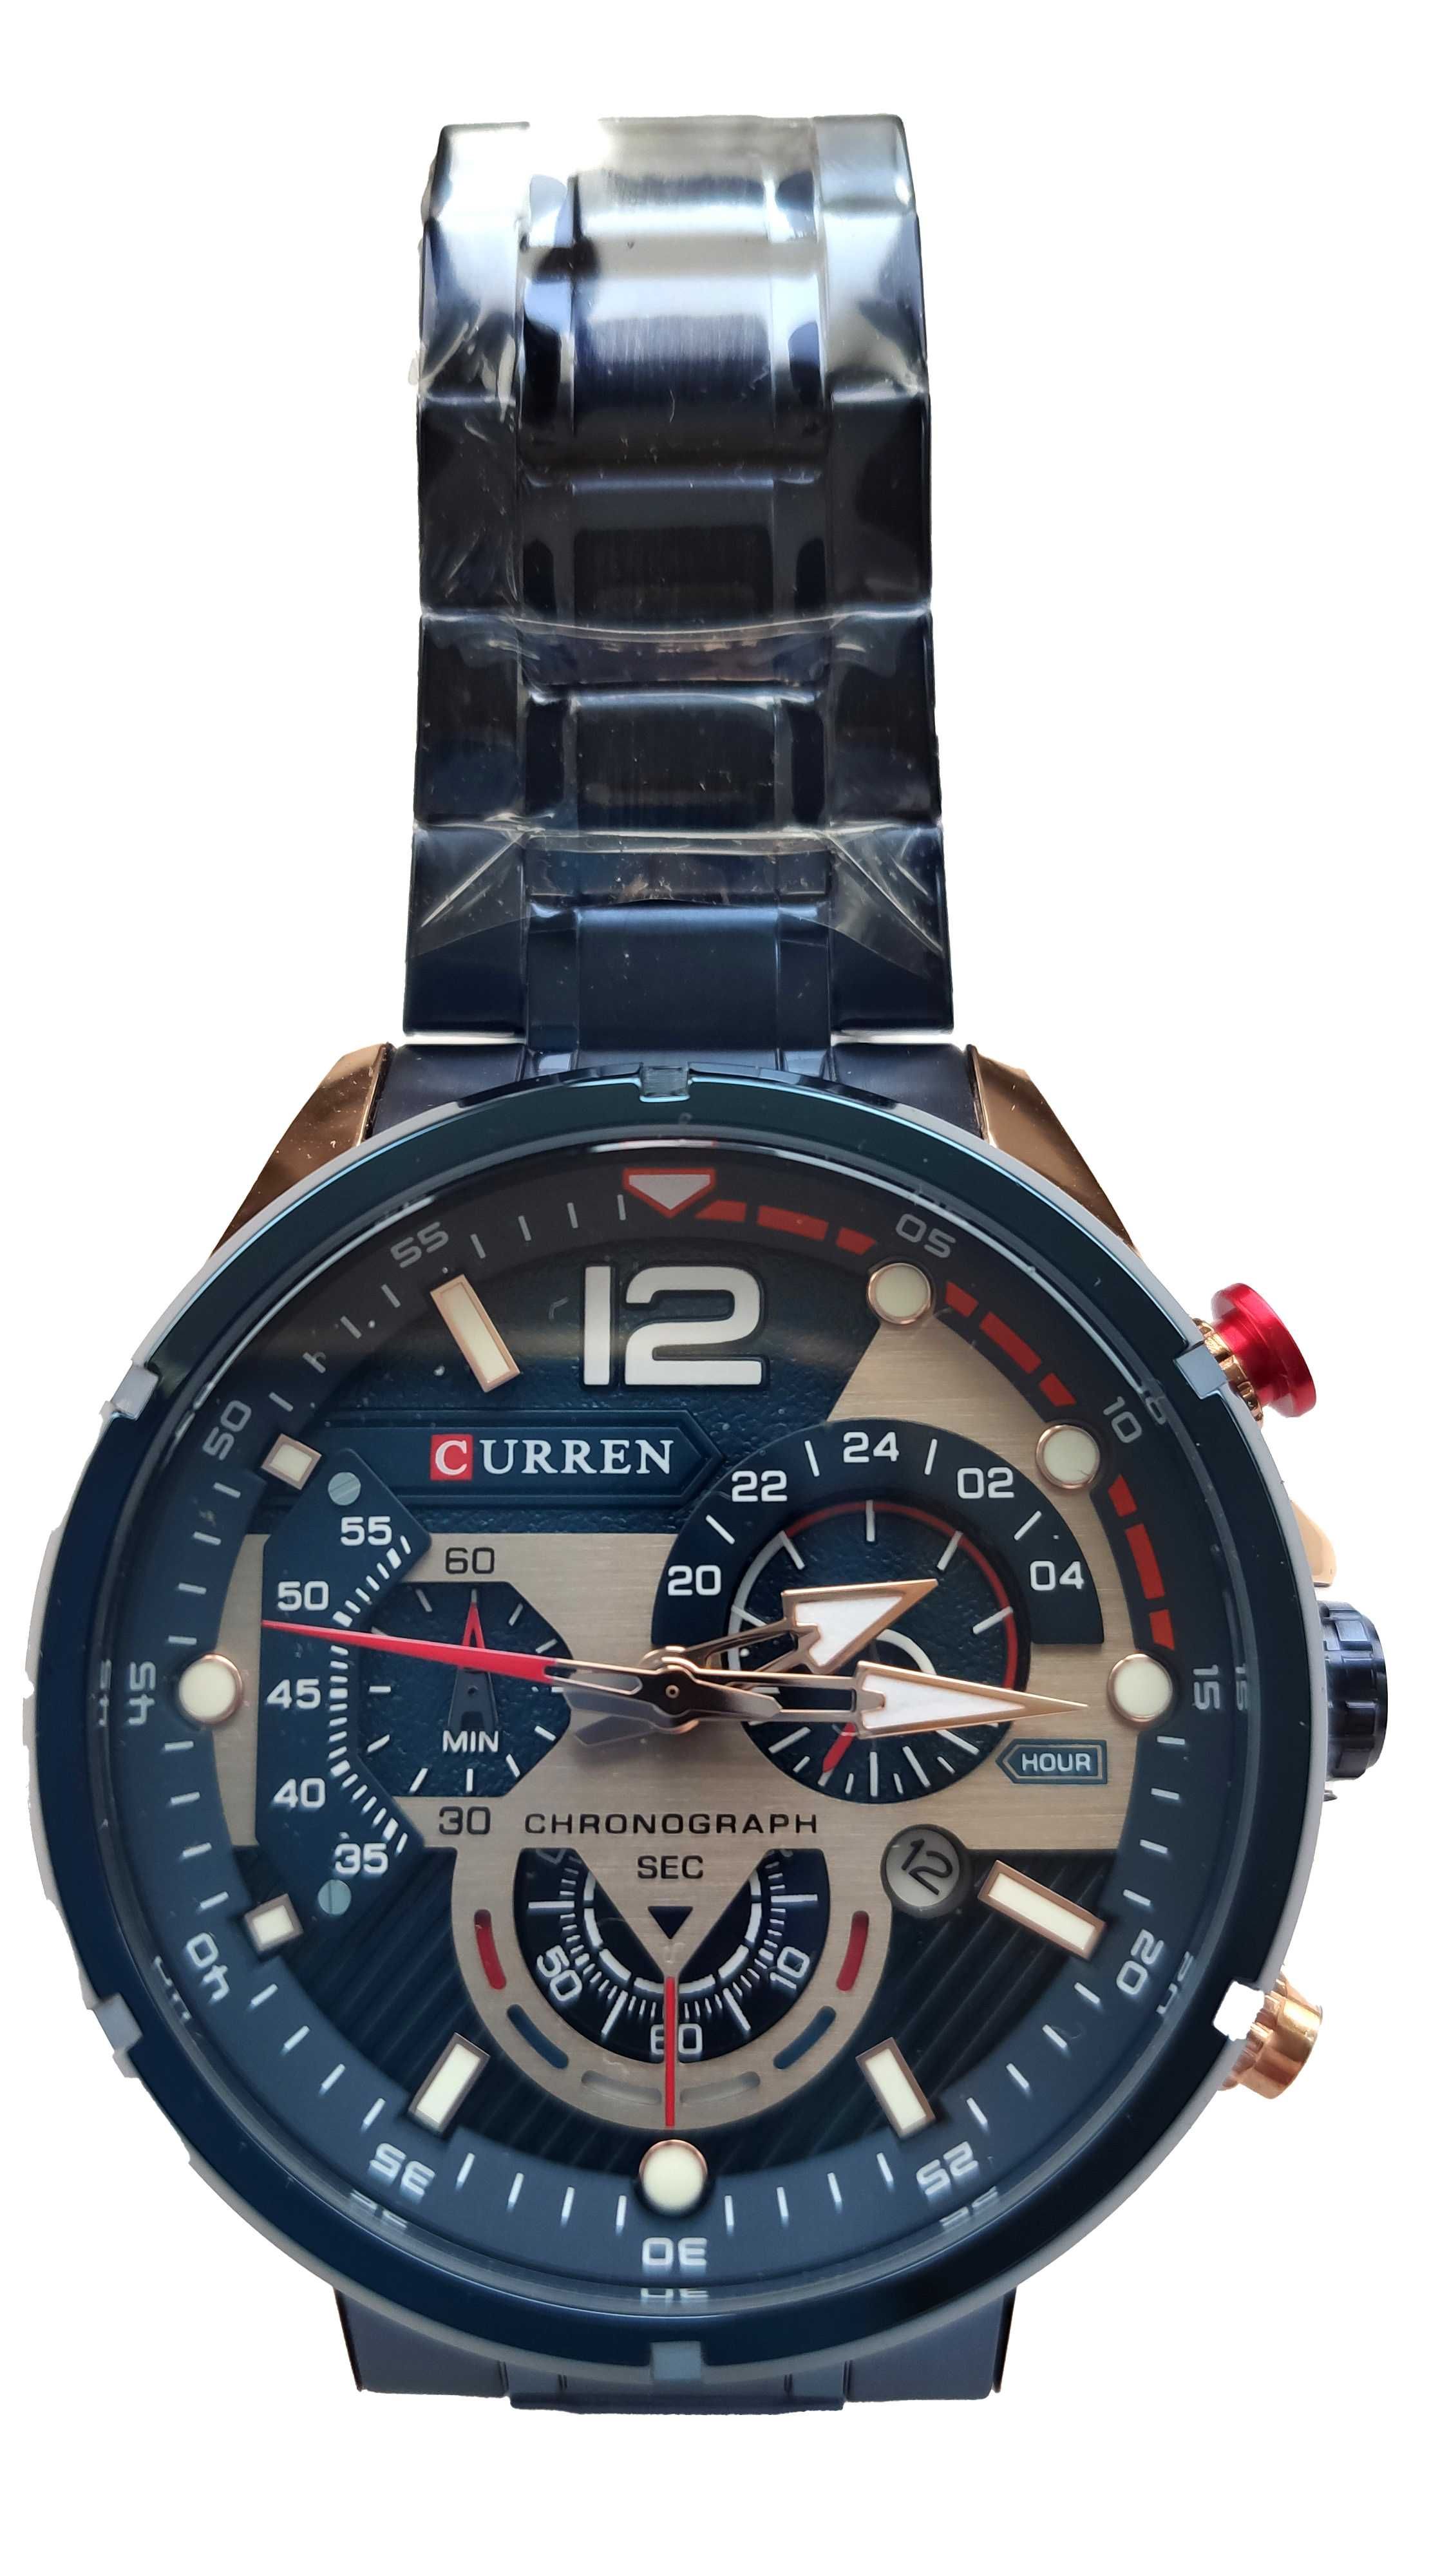 Мужские кварцевые часы CURREN модель 8395 купить недорого Киев Украина